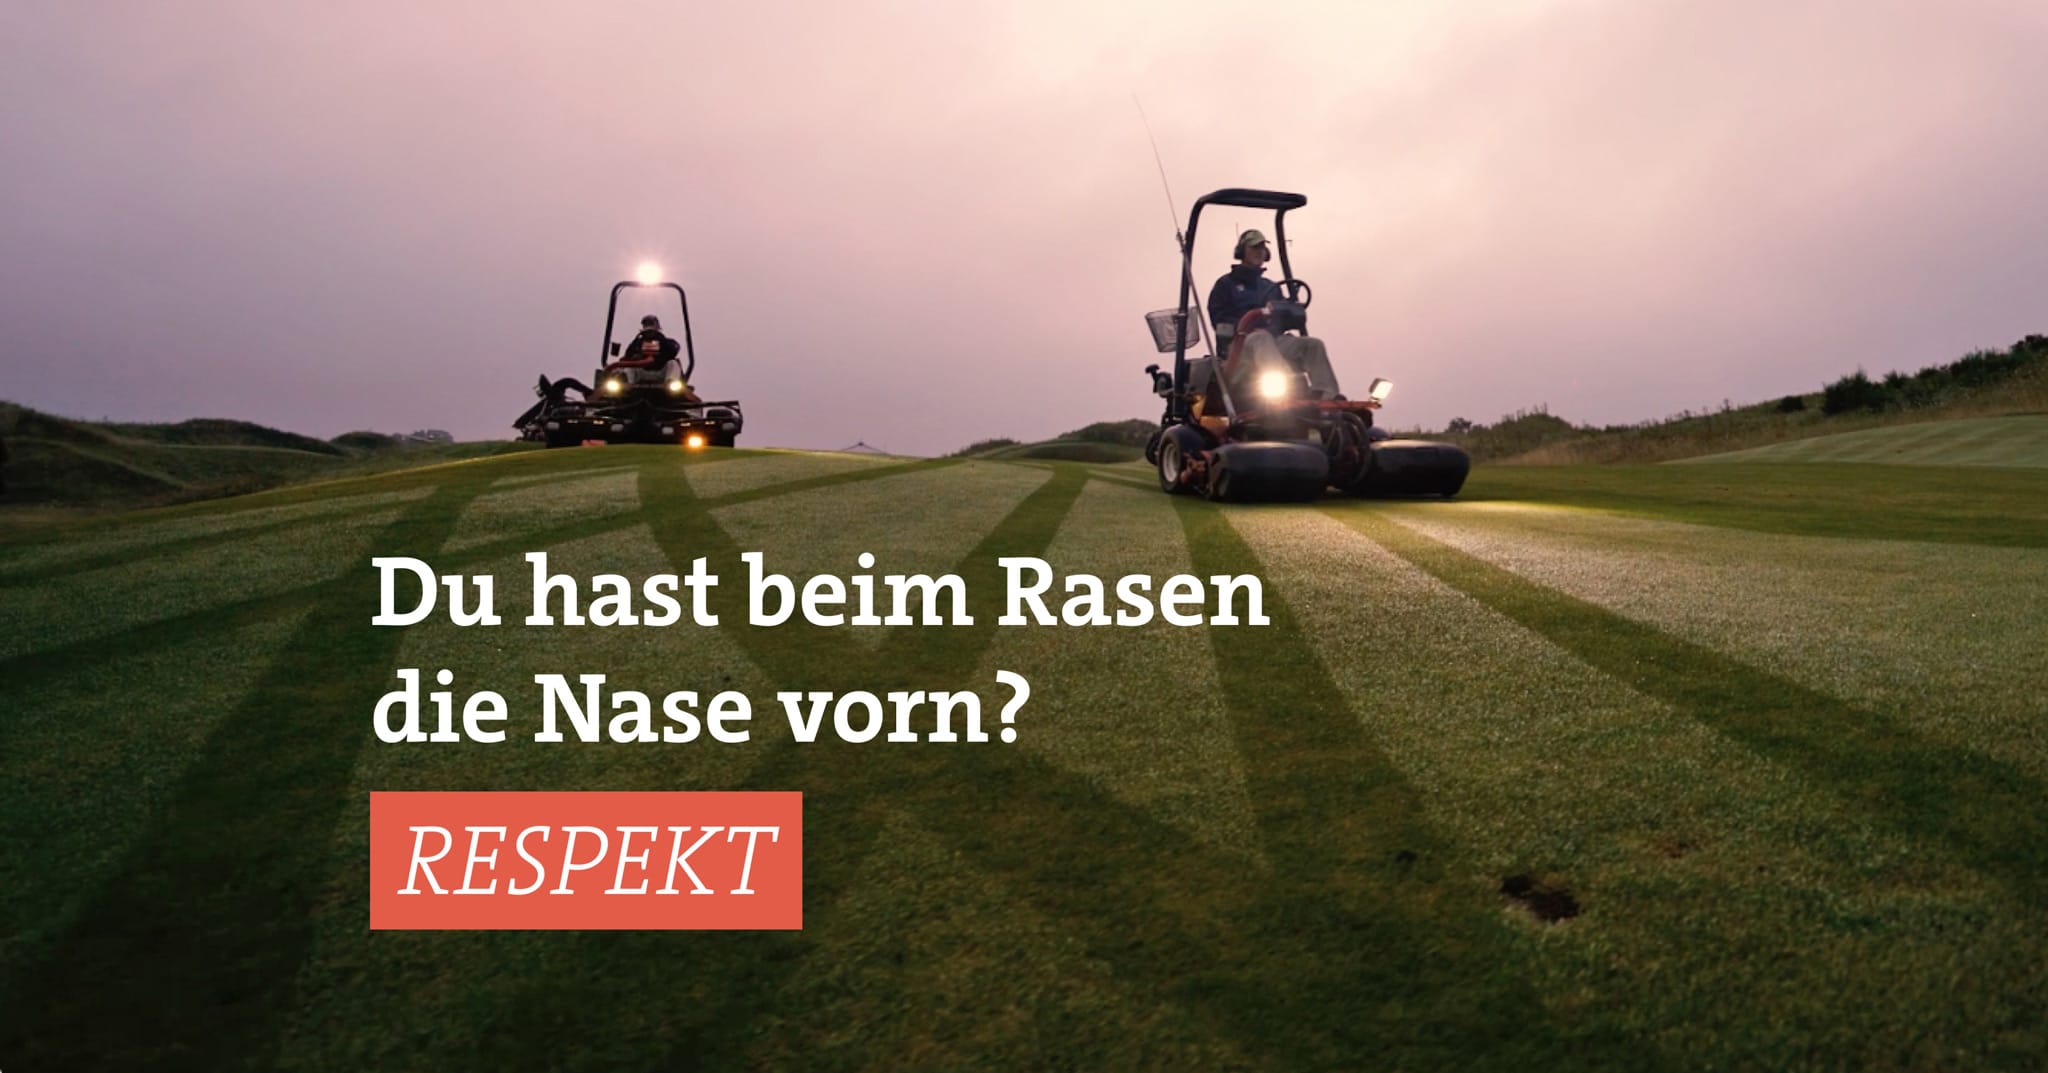 Zwei Rasenmäher fahren im Morgengrauen über den Golfplatz. Der Text im Bild lautet: Du hast beim Rasen die Nase vorn? Respekt.